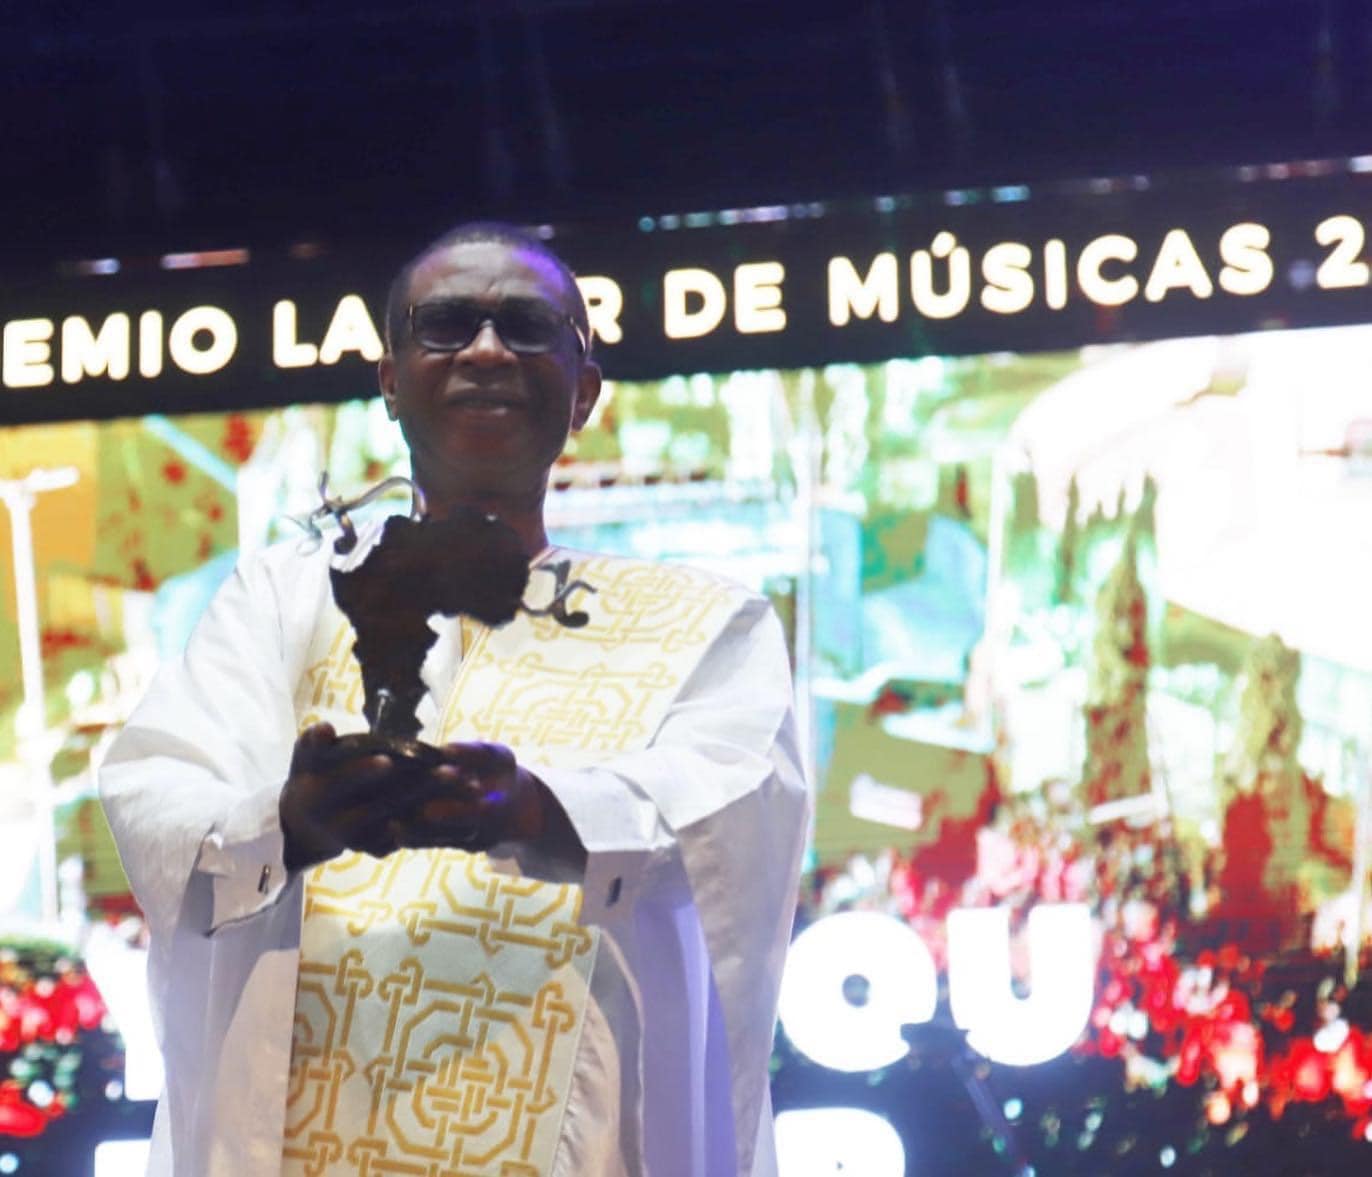 Youssou Ndour a reçu ce lundi 18 juillet 2022 à Cartagena, en Espagne, le Prix « La Mar de Músicas »